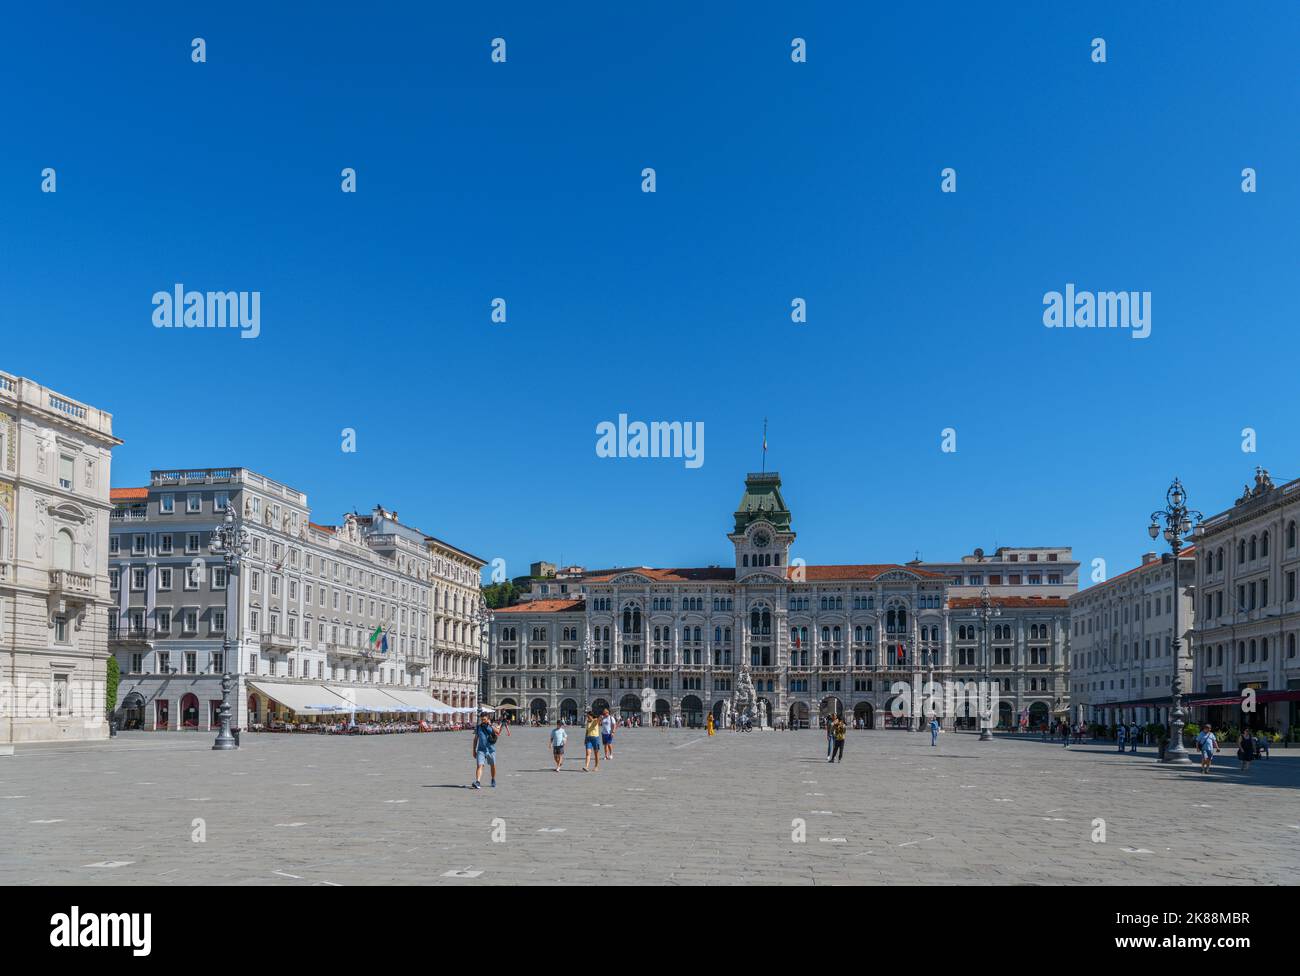 Unity of Italy Square (Piazza Unità d'Italia) looking towards the Palazzo del Municipio di Trieste (Town Hall), Trieste, Italy Stock Photo